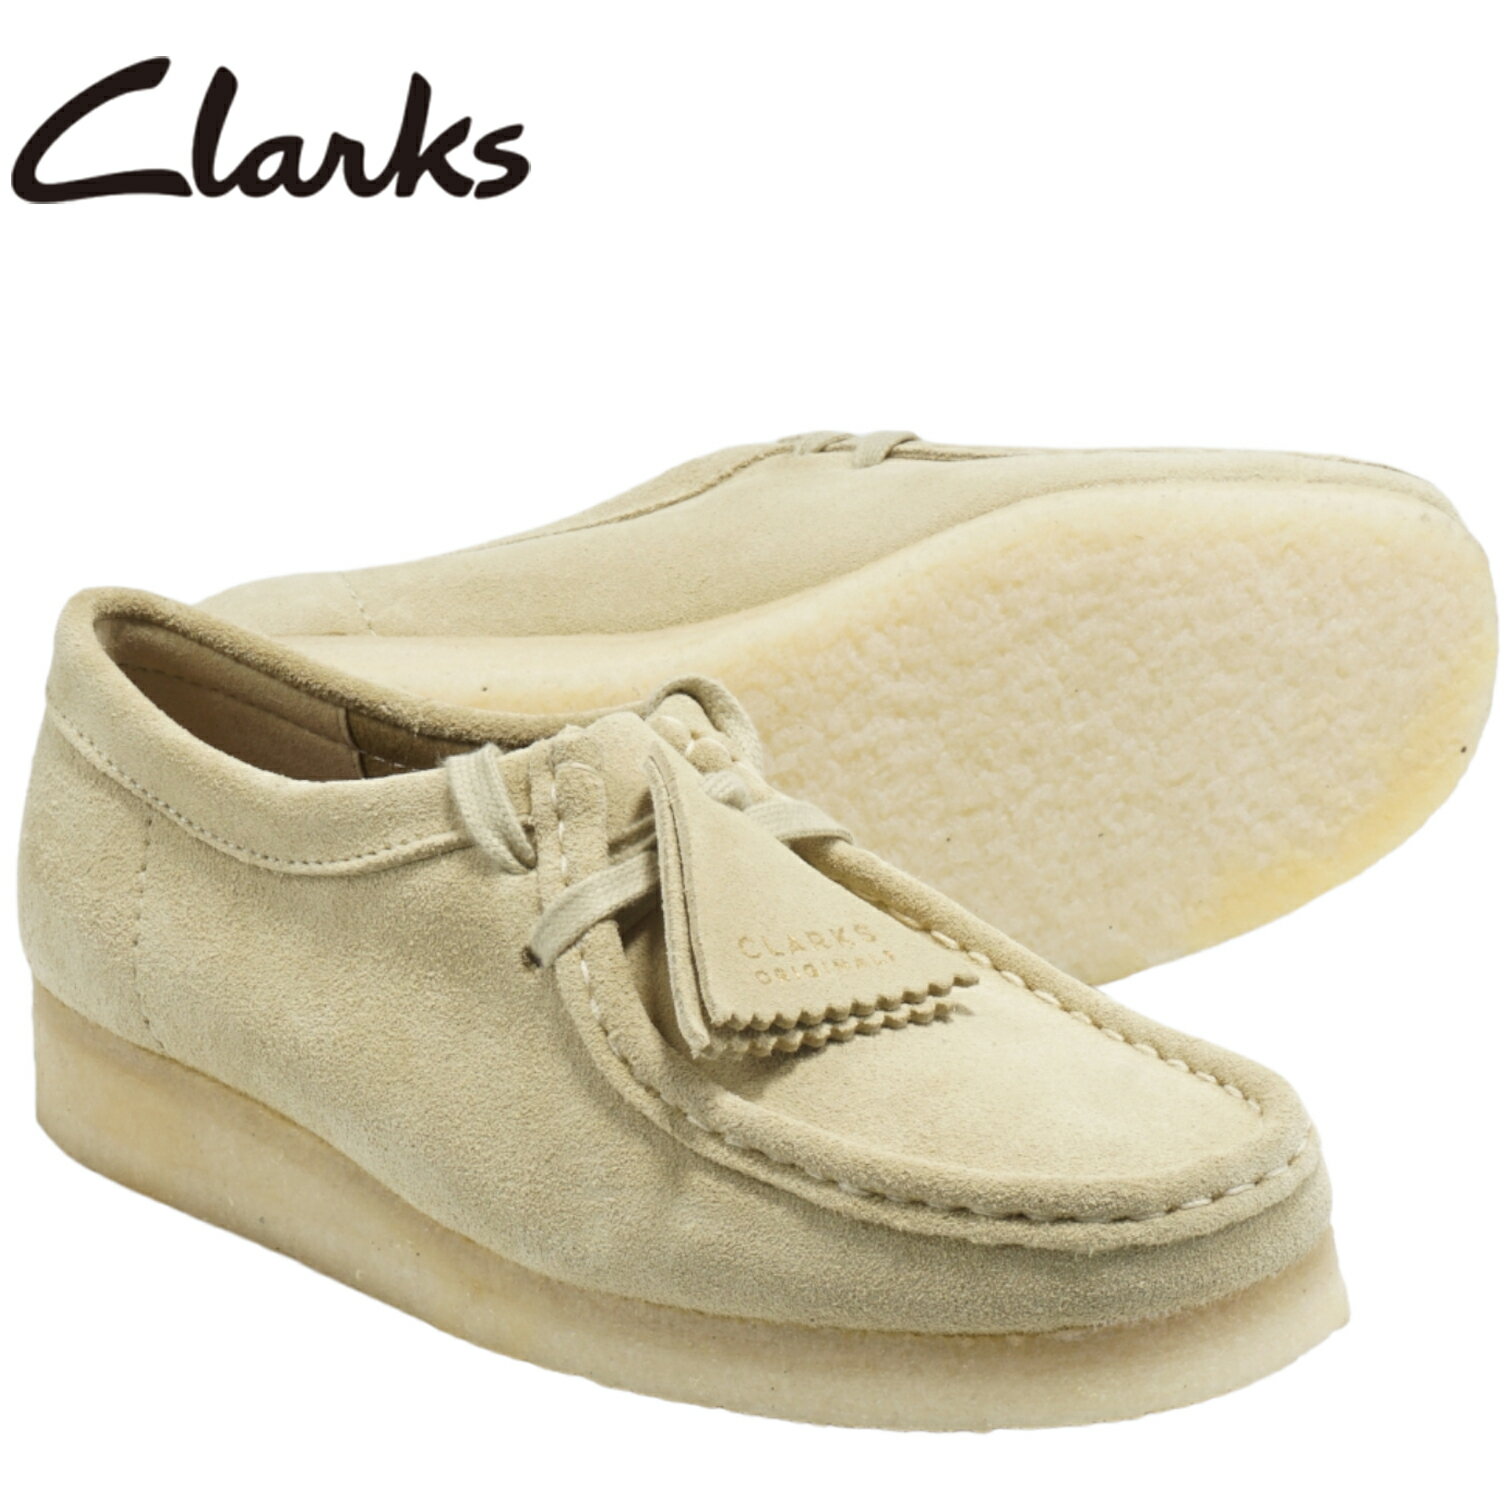 Clarks クラークス WALLABEE ワラビー 26155545 MAPLE SUEDE メープルスエード ブラウン ベージュ レディース ブーツ